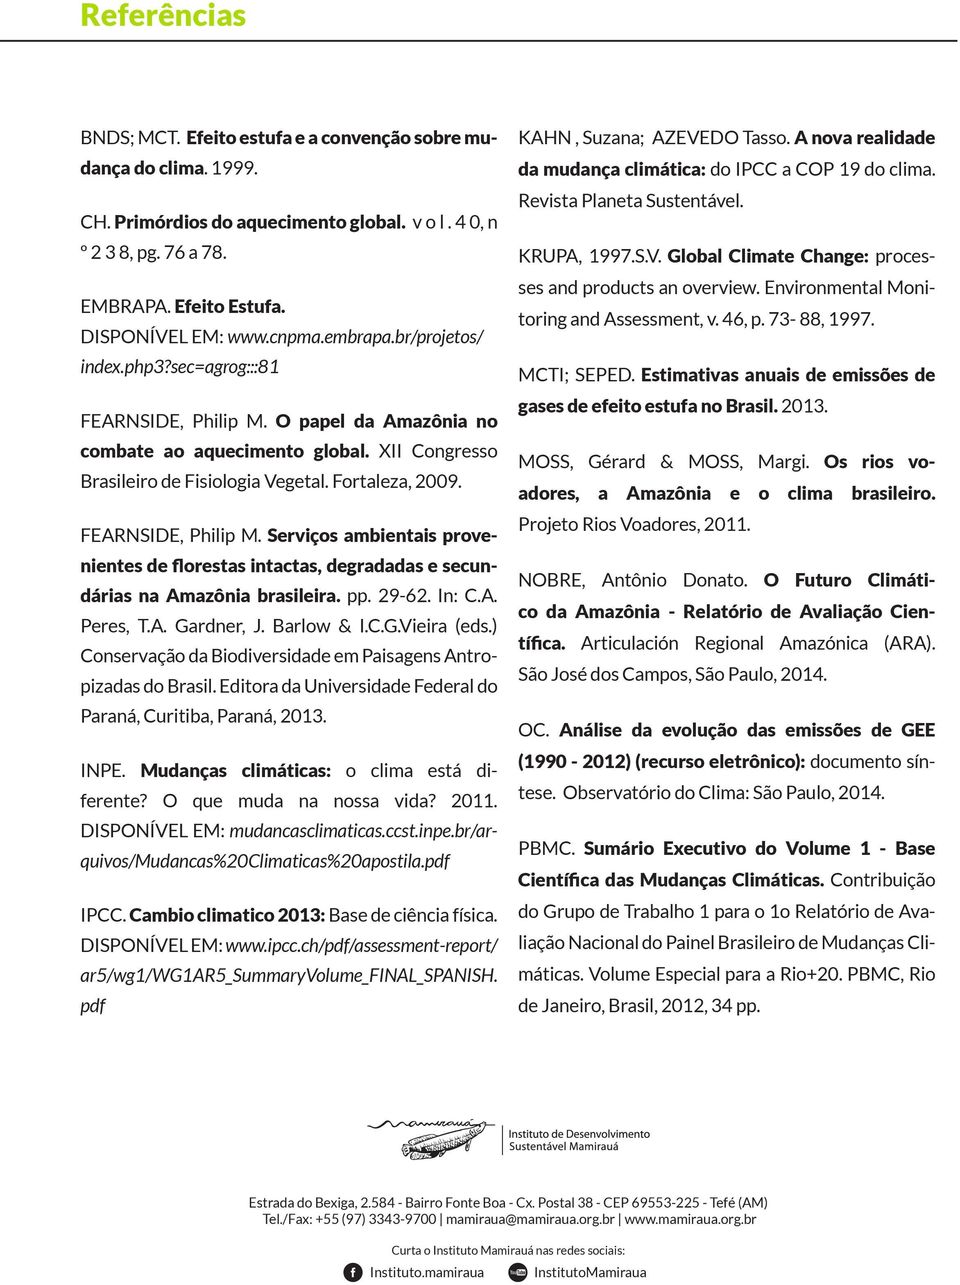 FEARNSIDE, Philip M. Serviços ambientais provenientes de florestas intactas, degradadas e secundárias na Amazônia brasileira. pp. 29-62. In: C.A. Peres, T.A. Gardner, J. Barlow & I.C.G.Vieira (eds.